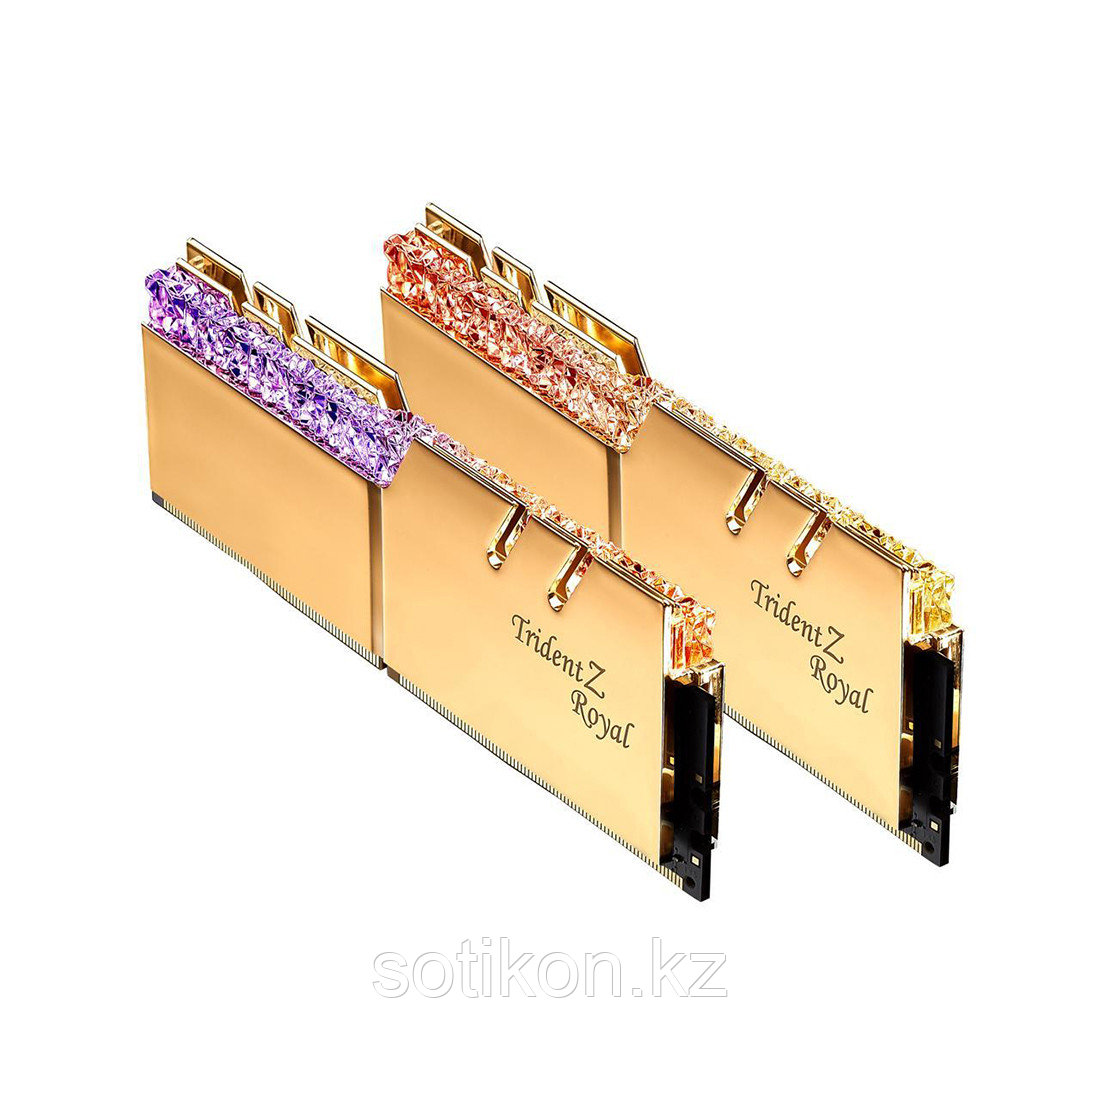 Комплект модулей памяти G.SKILL TridentZ Royal F4-4400C18D-16GTRGC DDR4 16GB (Kit 2x8GB) 4400MHz